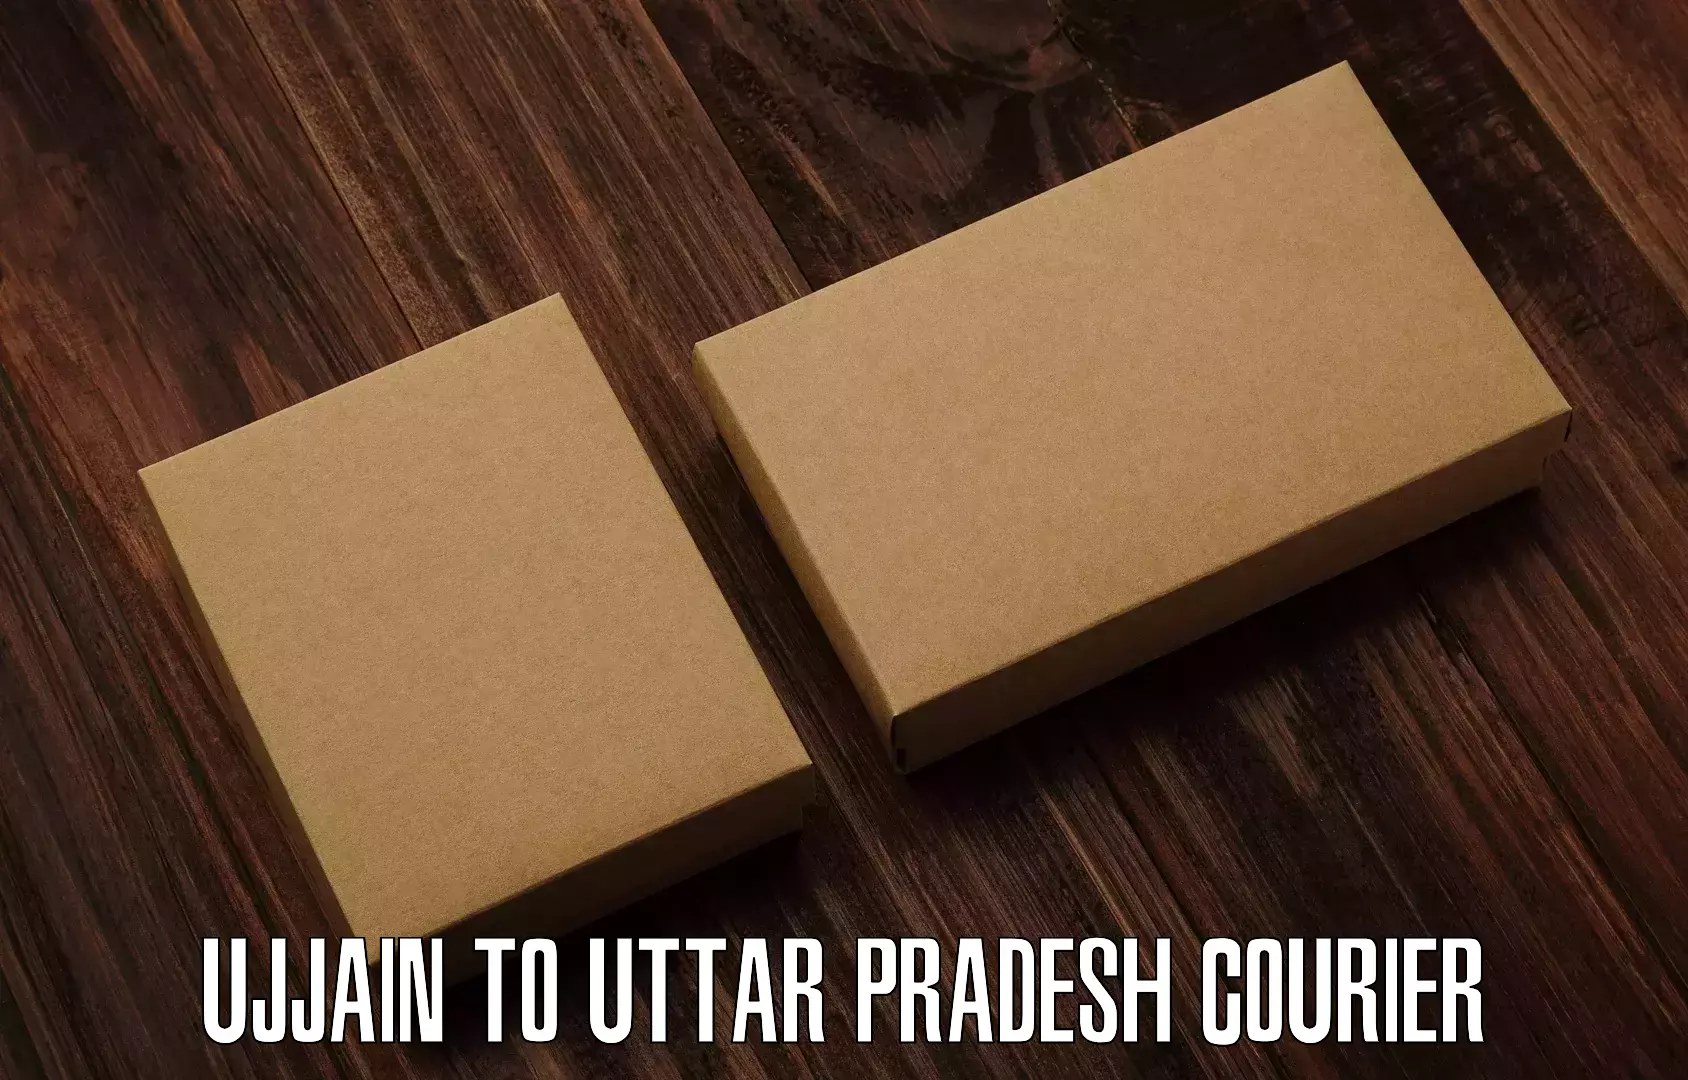 Courier service comparison Ujjain to Mehnagar